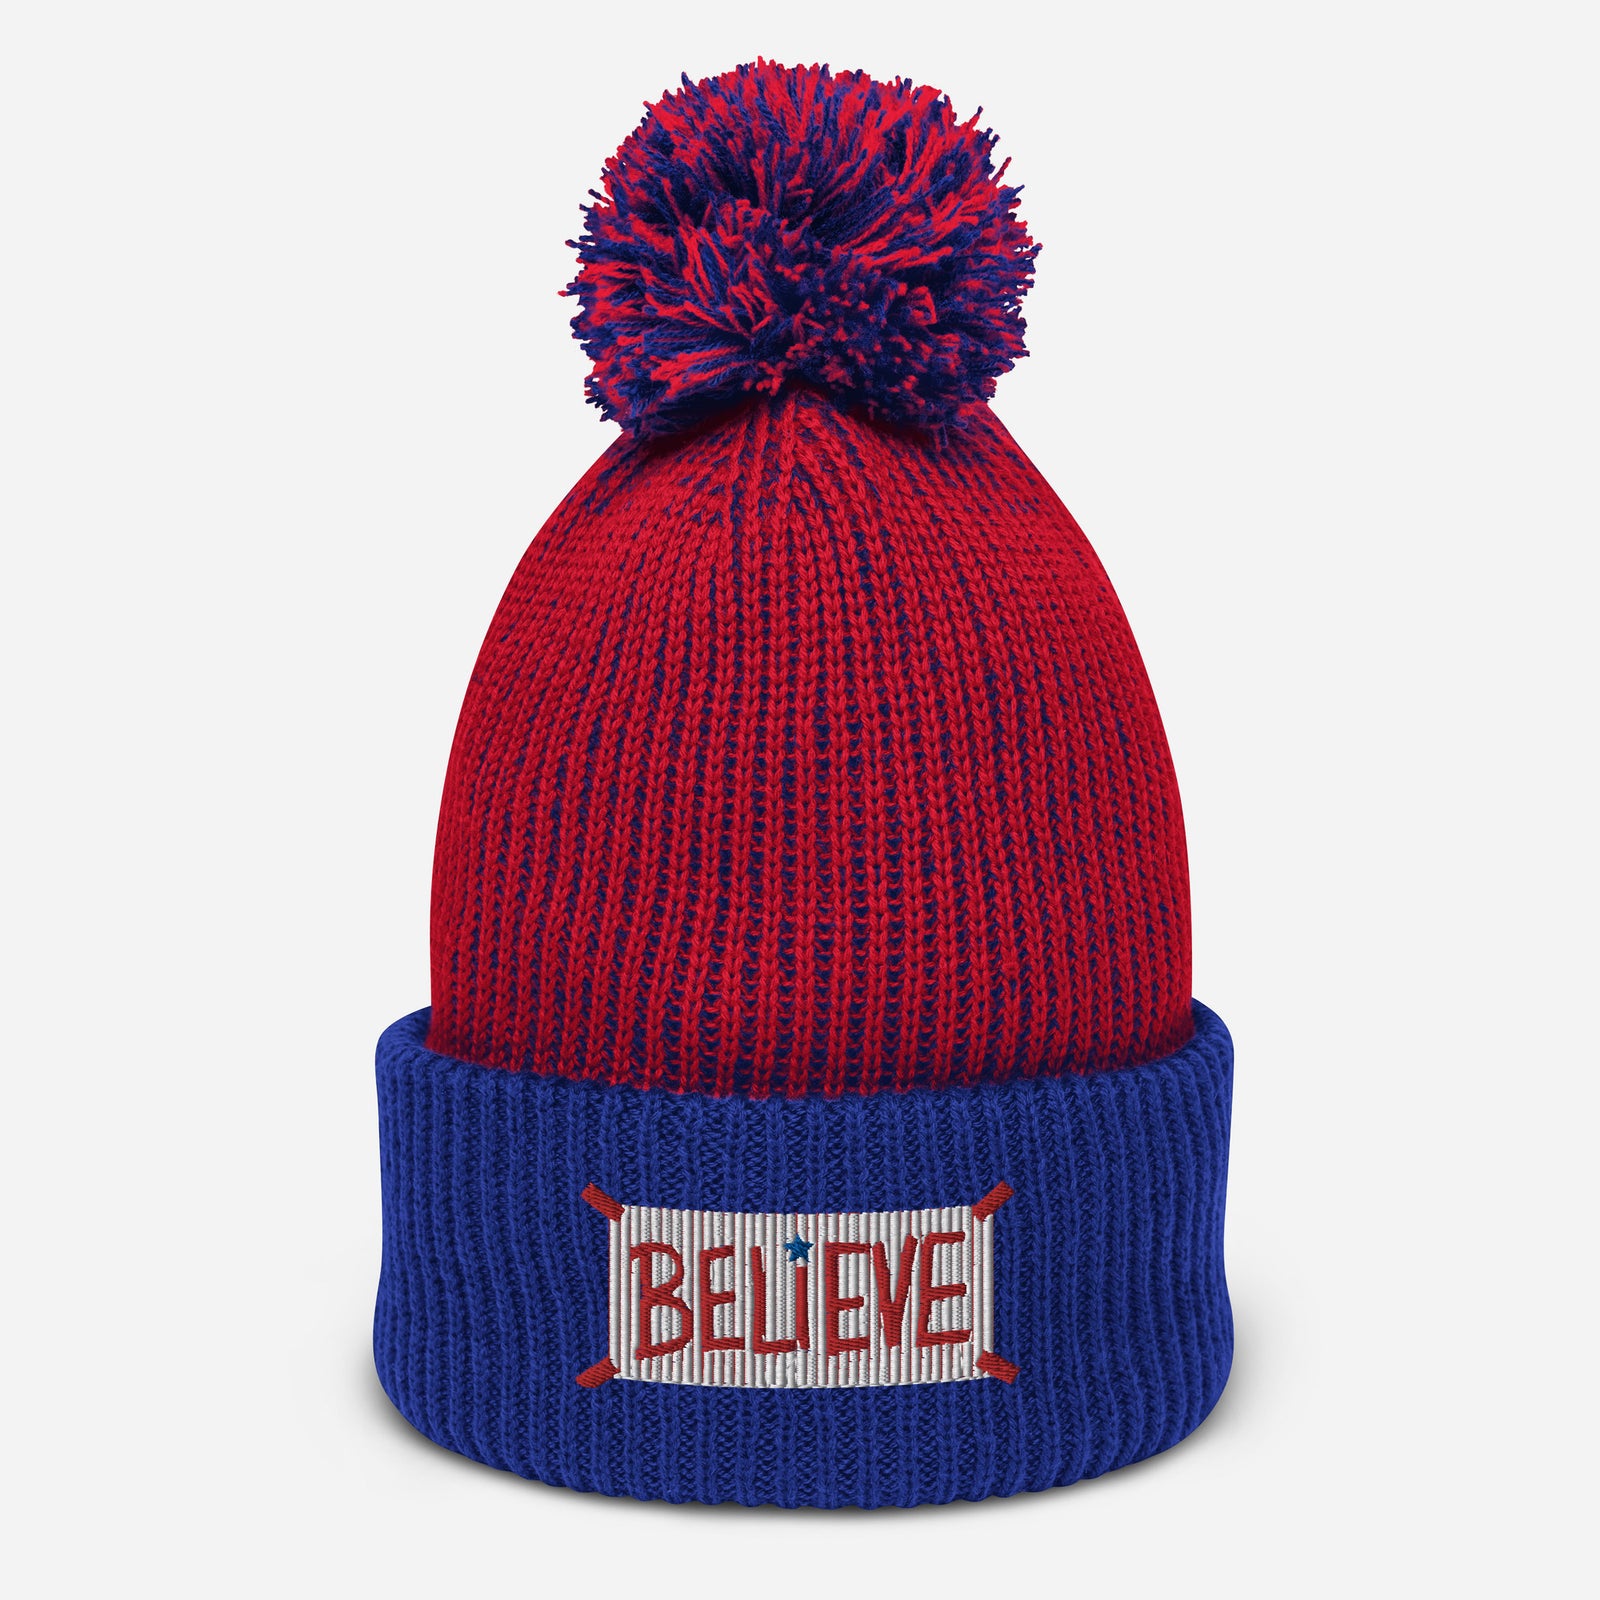 "Believe" Pom-Pom Knit Hat